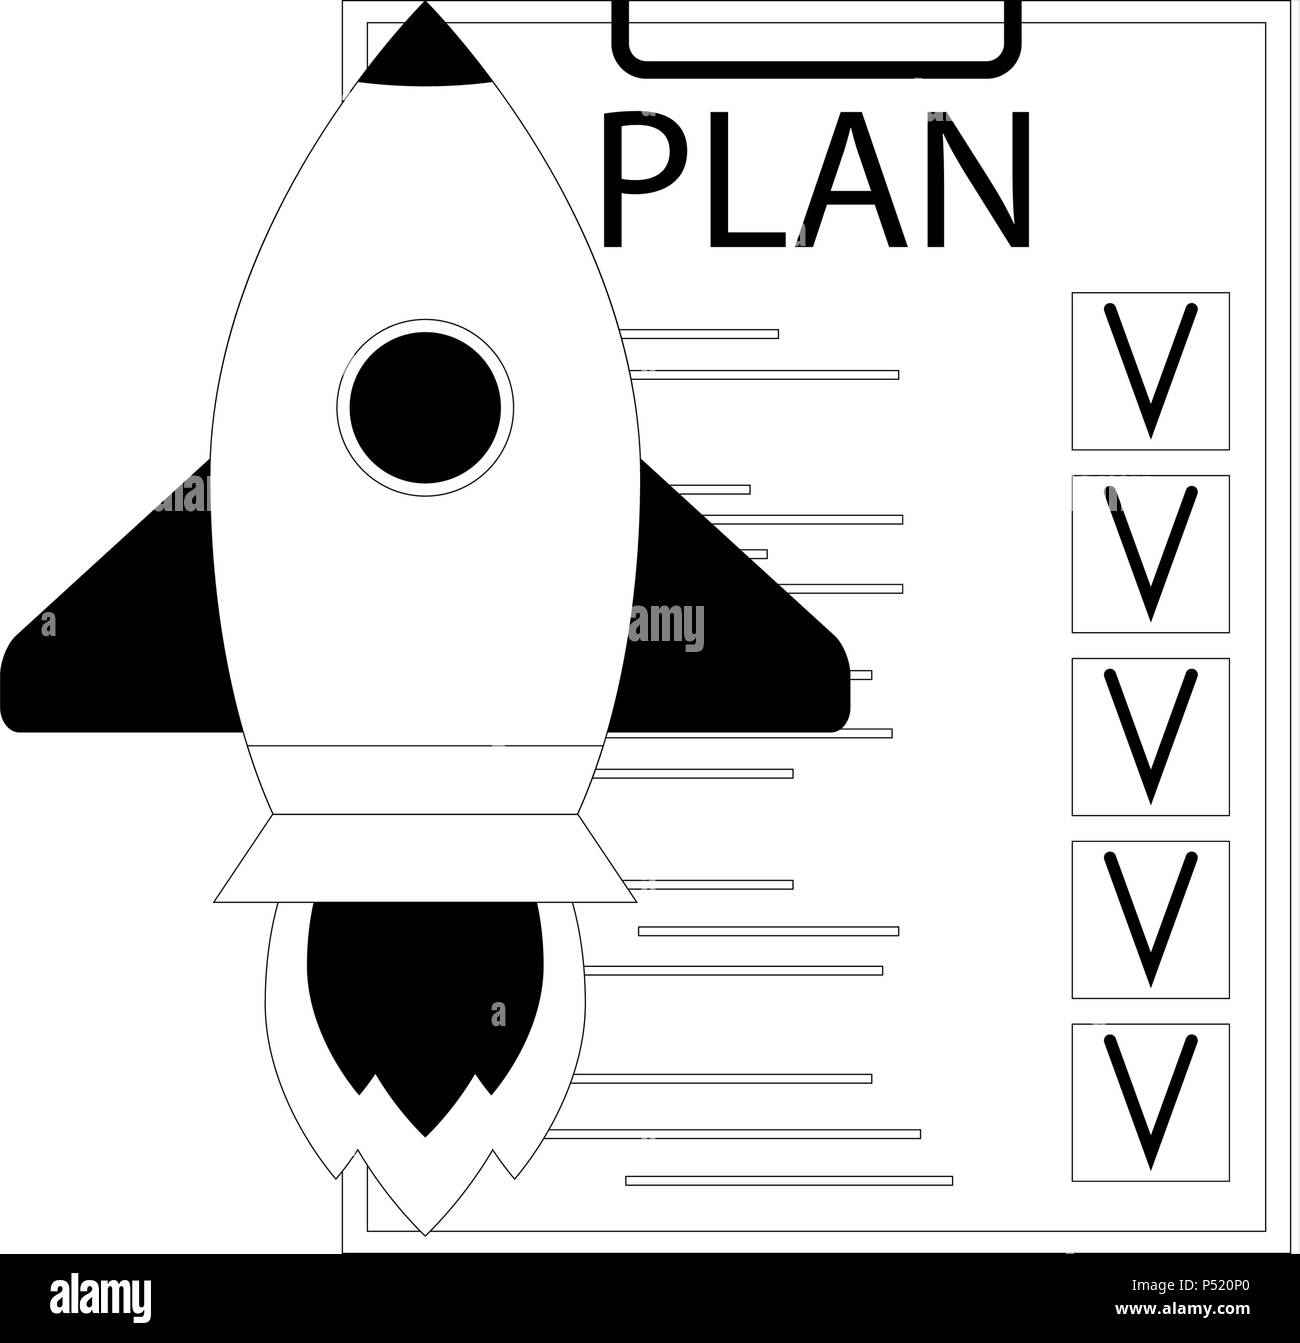 Plan Start starten. Rakete und Checkliste. Entwicklung Idee, Strategie, Prozess, Vector Illustration Stock Vektor